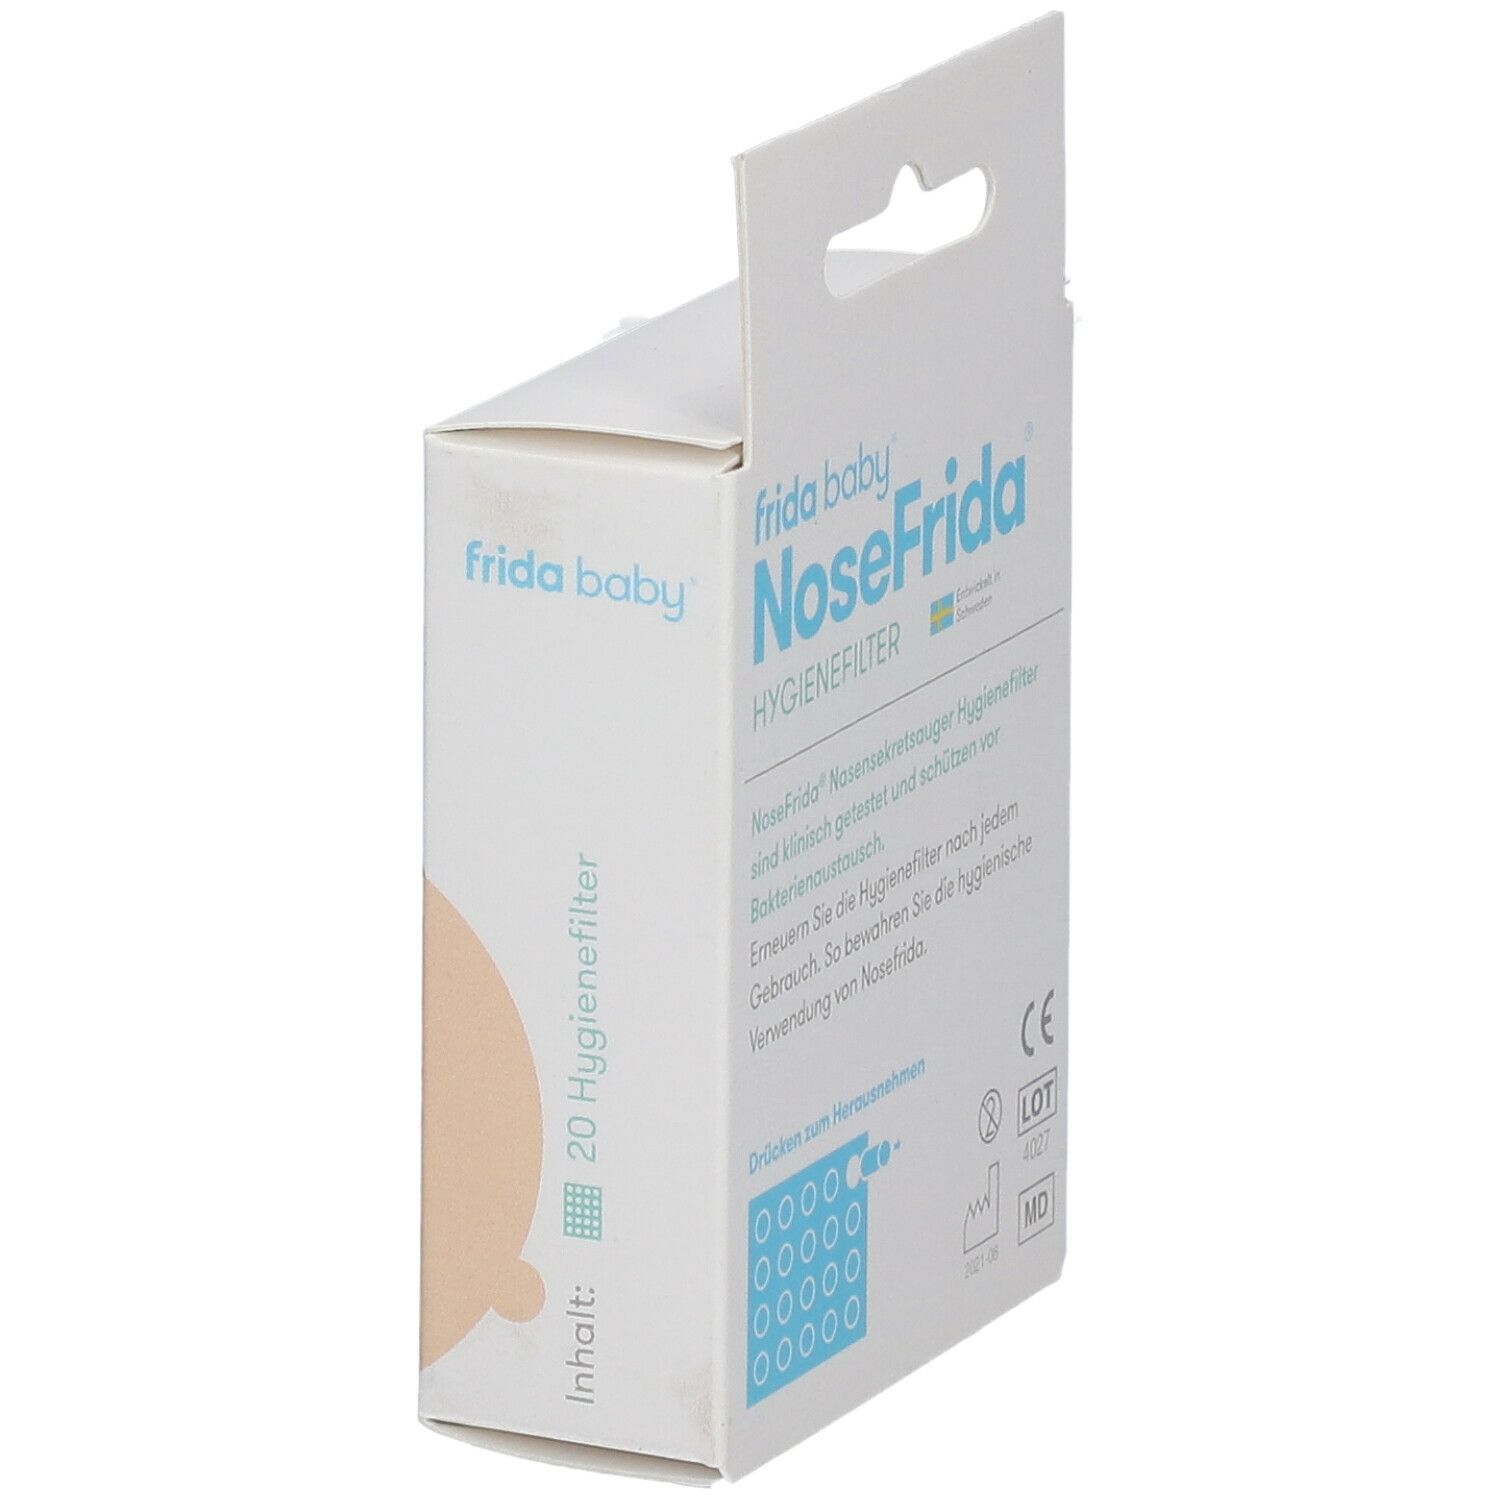 NoseFrida® Hygienefilter